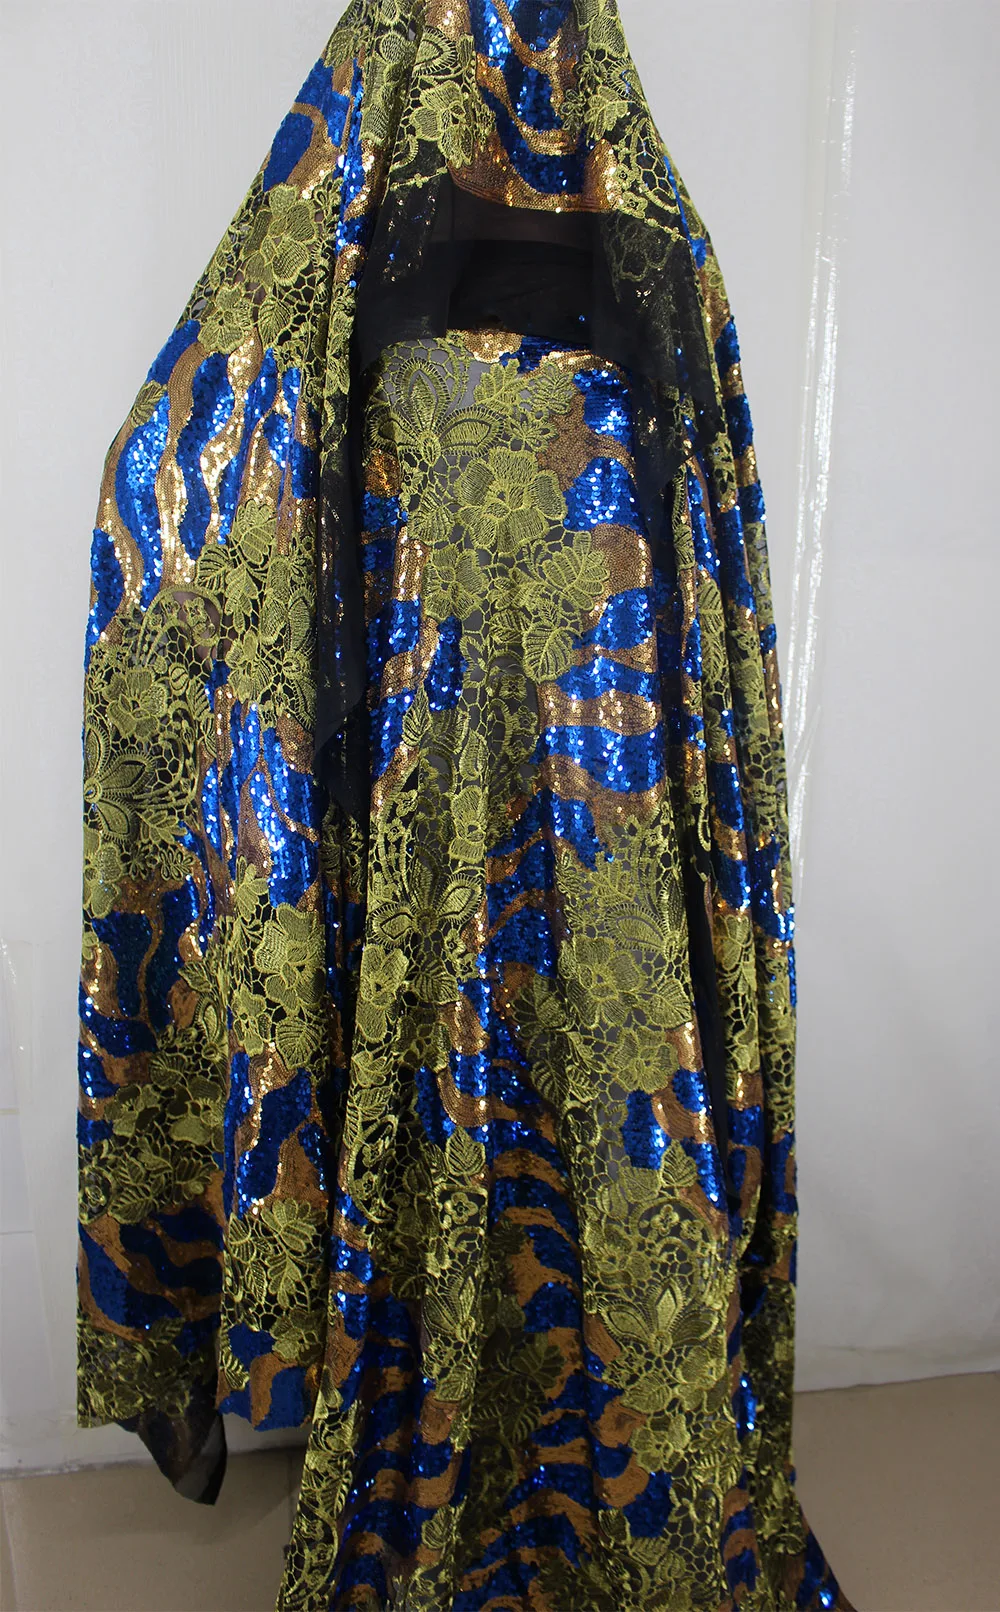 Последняя вышивка дизайн африканская сетка кружева с блестками для свадебного платья ткань нигерийское французское Тюлевое кружево, гипюр шнур кружева